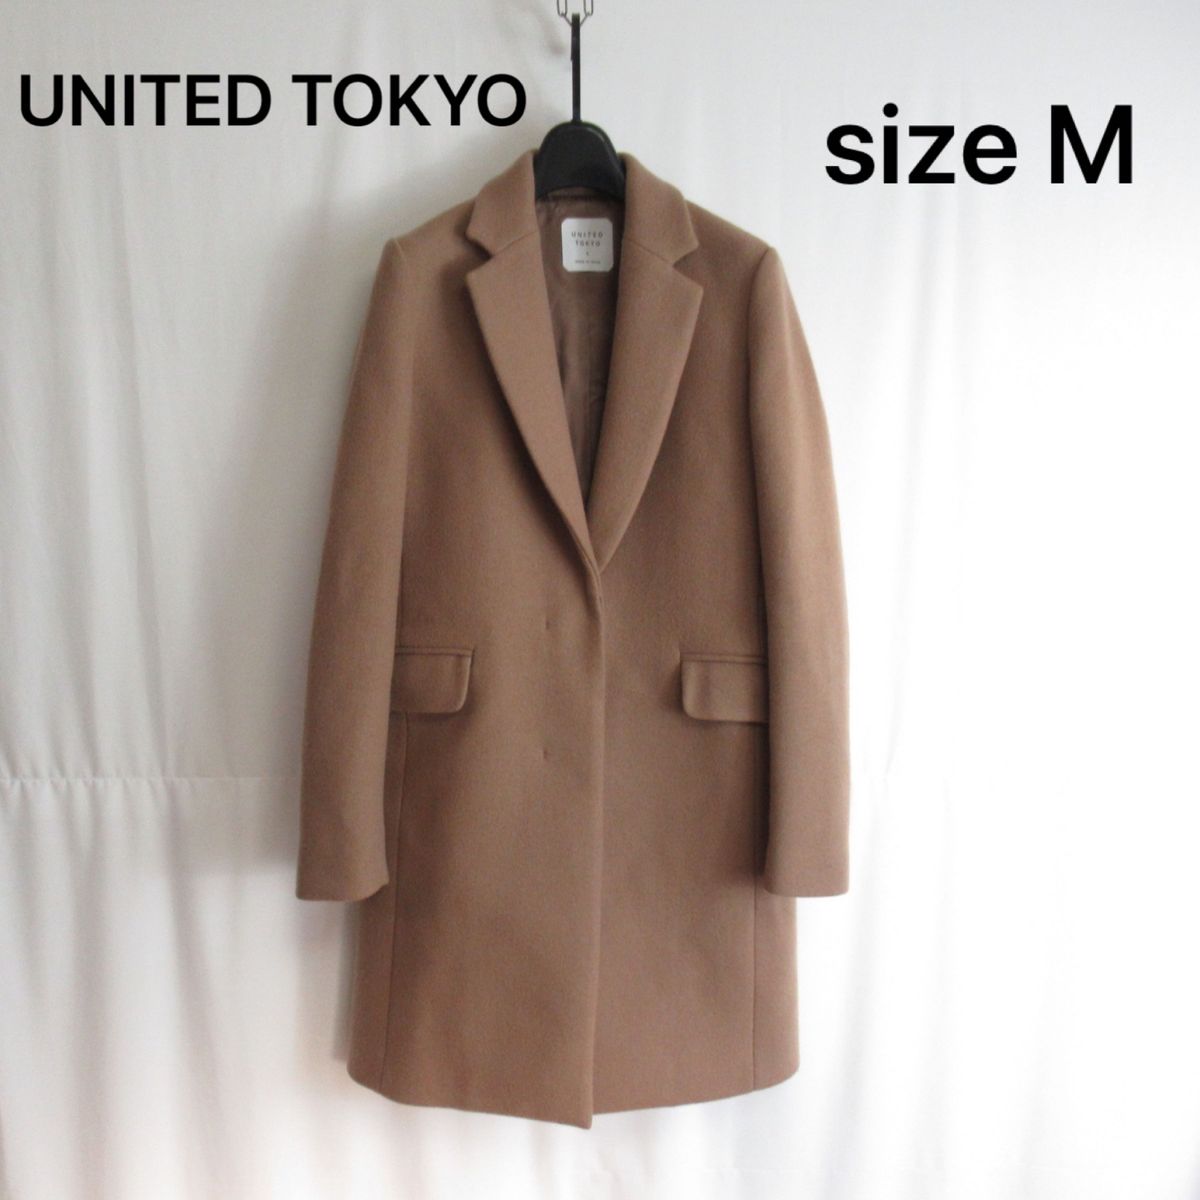 UNITED TOKYO ウール チェスターコート アウター ジャケット 2 Mサイズ